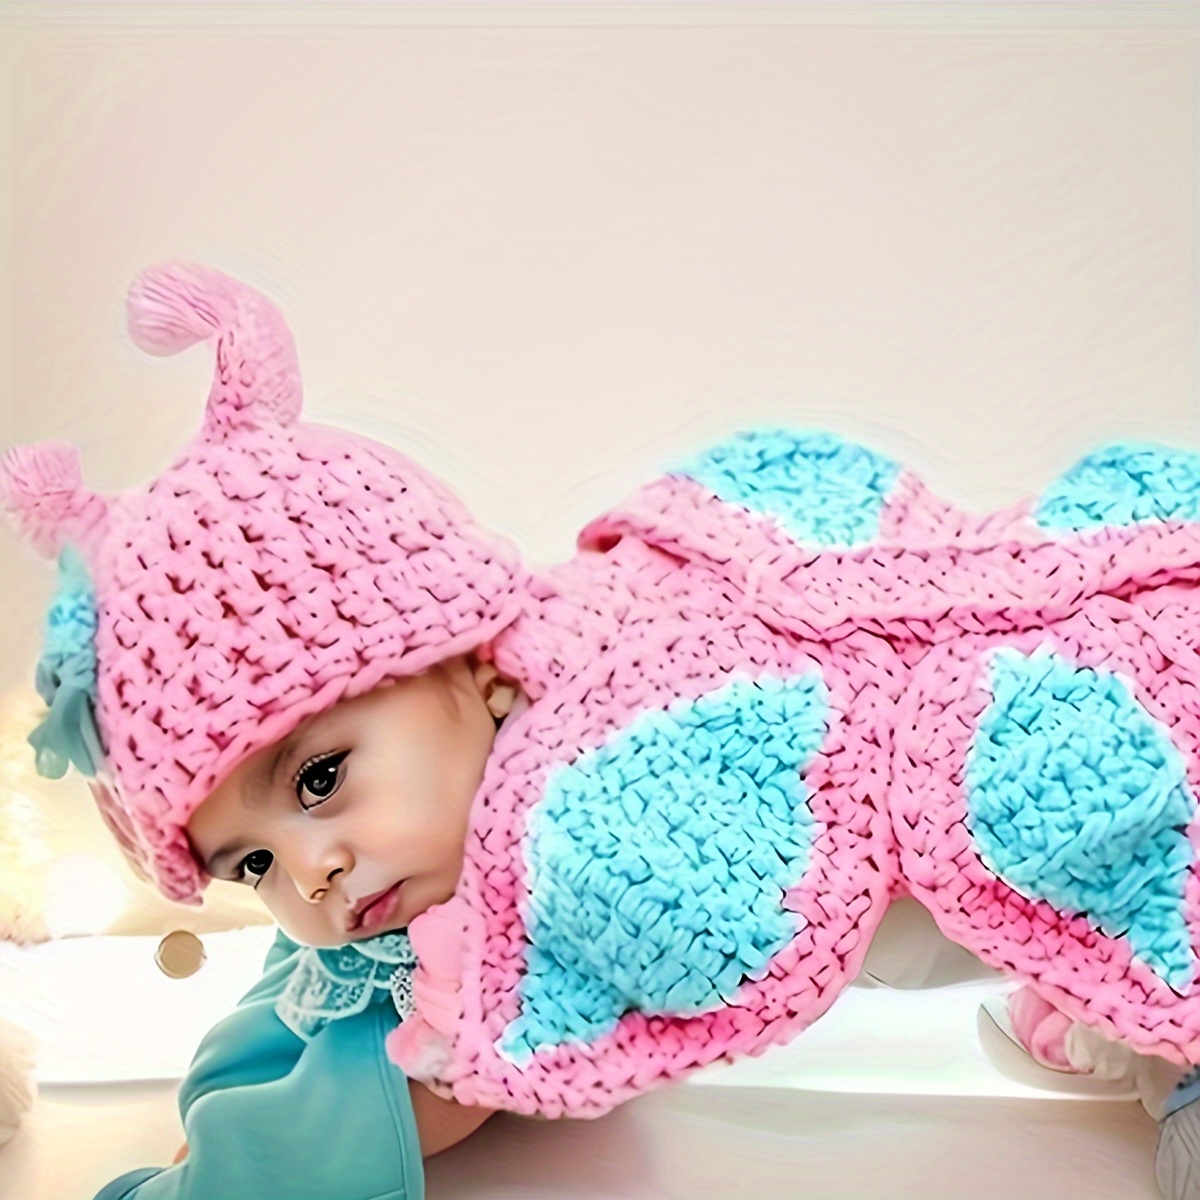 Crochet disfraz bebe niña bebes accesorios recien nacido manga larga ropa  bebe niño accesorios para fotografia